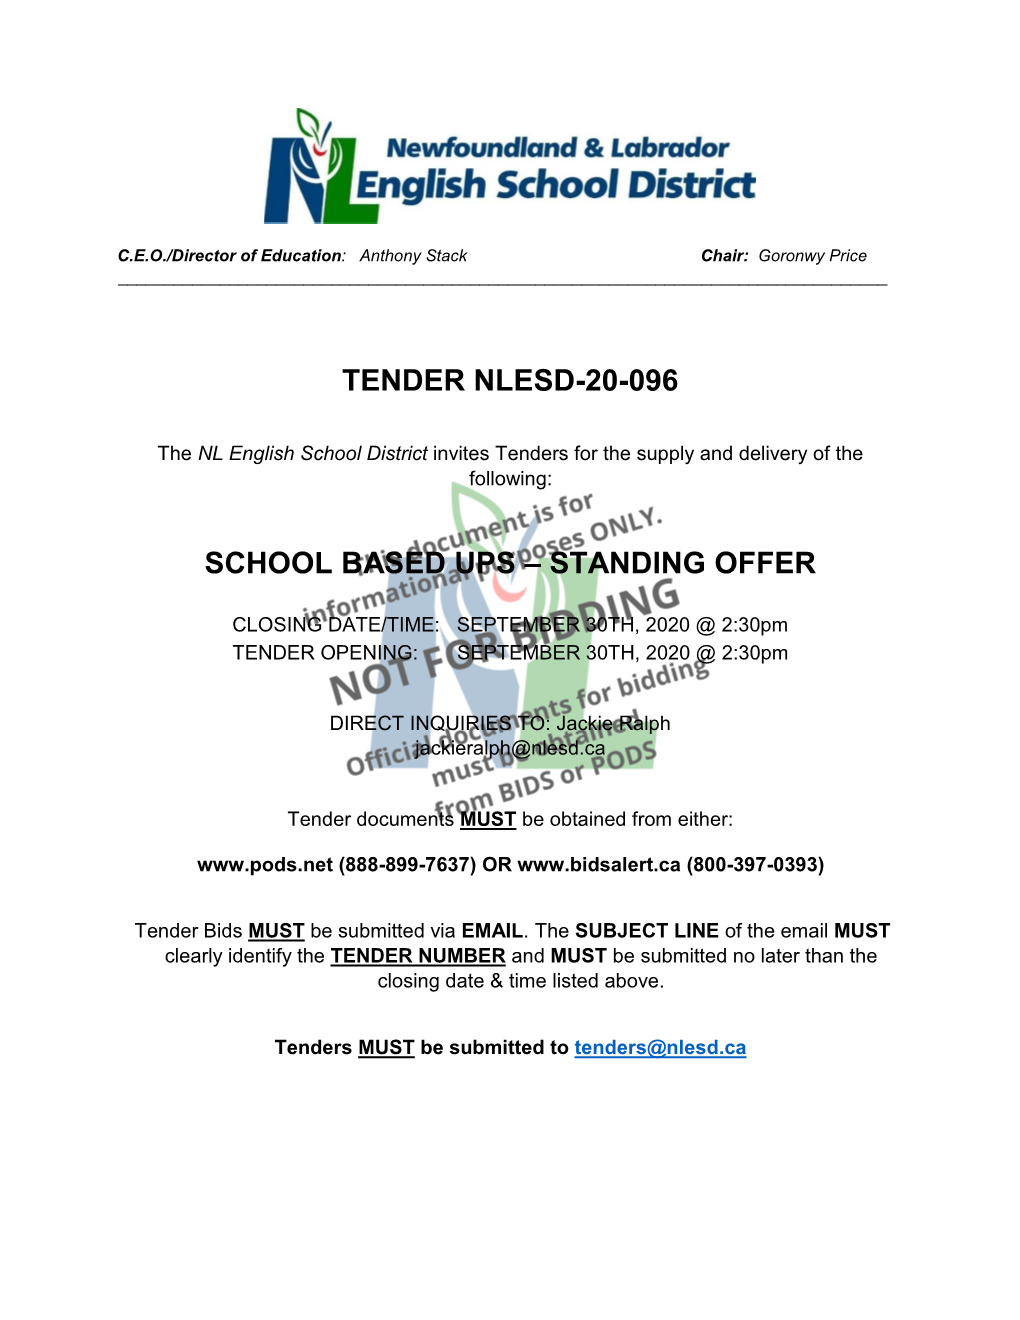 Tender Nlesd-20-096 School Based Ups – Standing Offer